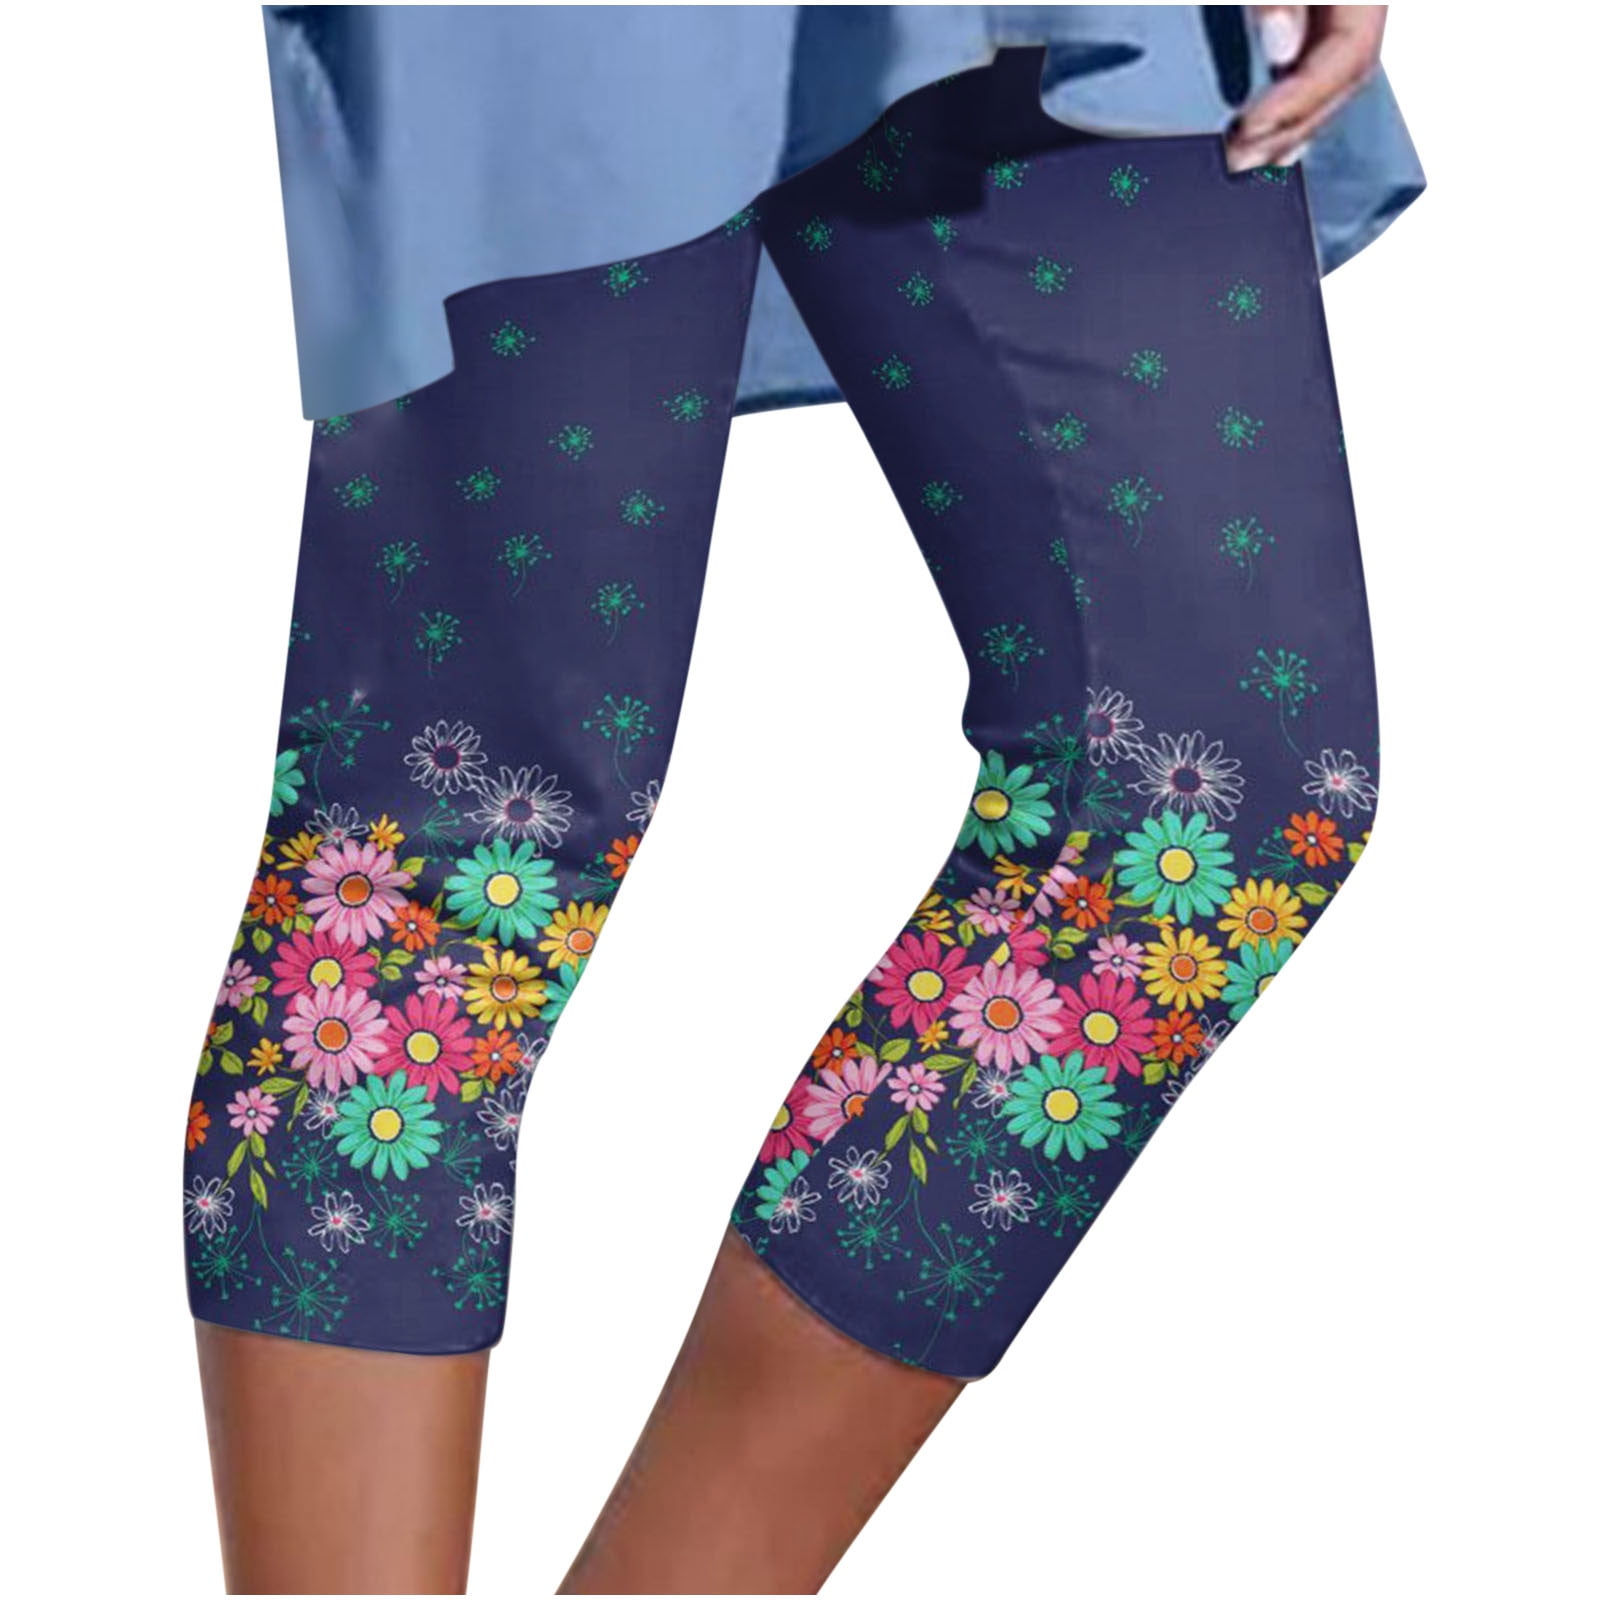 leggings : Colorfulkoala Women's High Waisted Yoga Pants 7/8